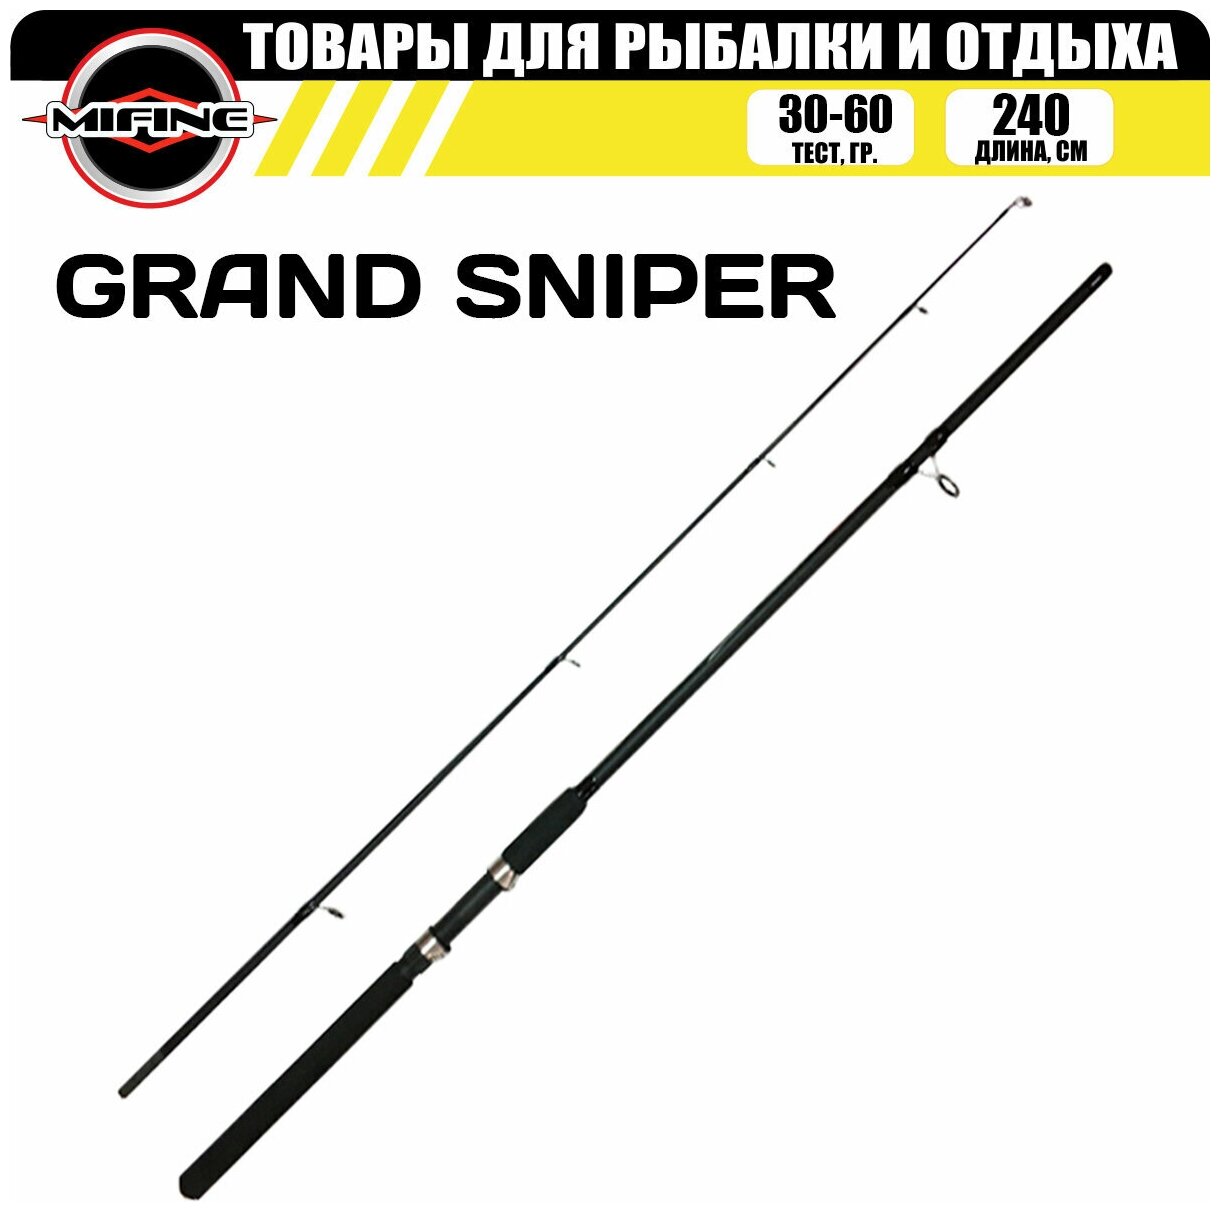 Спиннинг рыболовный MIFINE GRAND SNIPER SPIN 2.4м (30-60гр), для рыбалки, штекерный